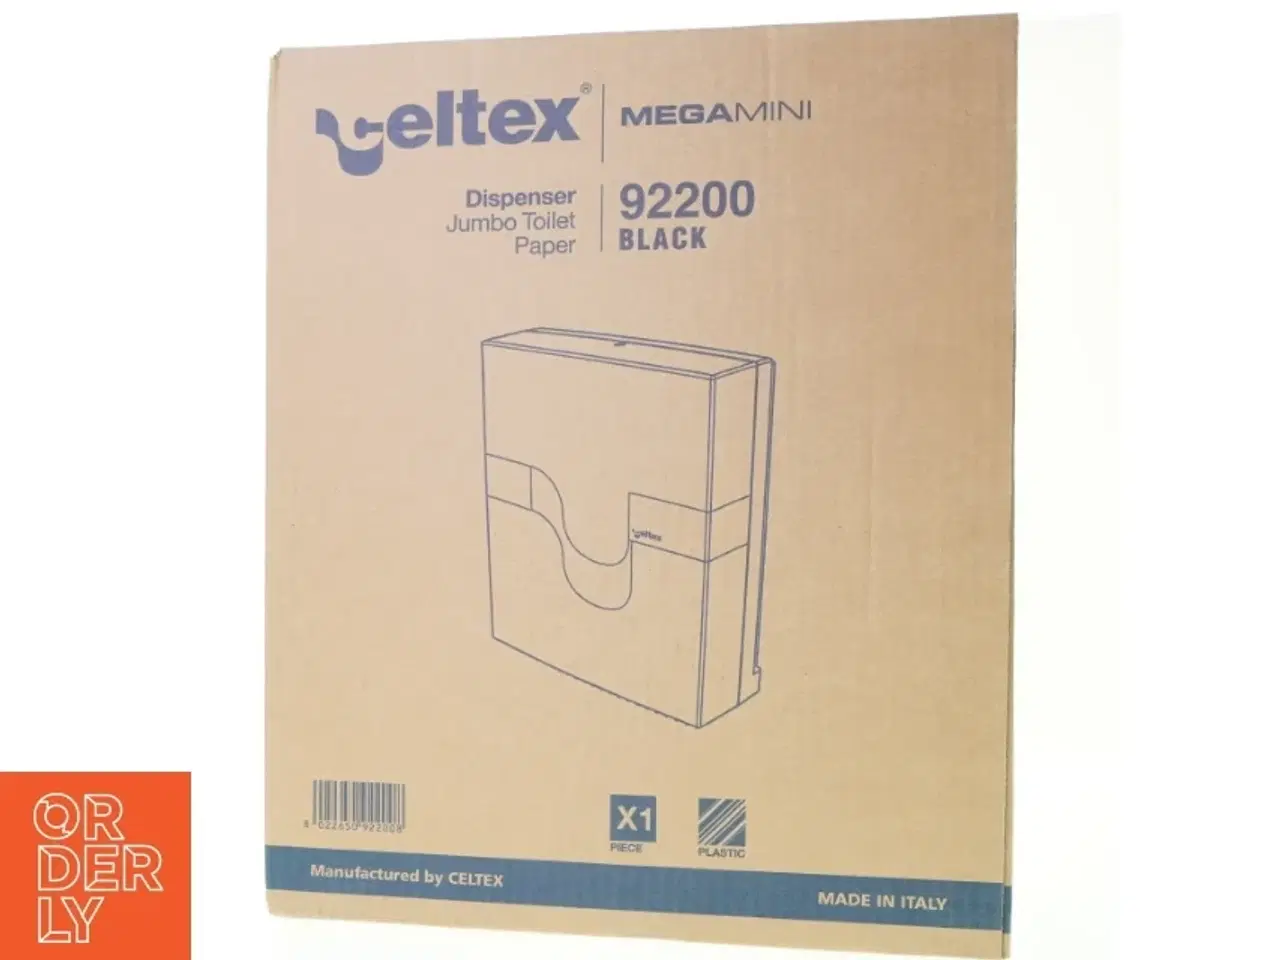 Billede 2 - Dispenser jumbo toilet paper mega mini 9 2 2 0 0 black fra Celtex (str. 39 x 33 x 13)